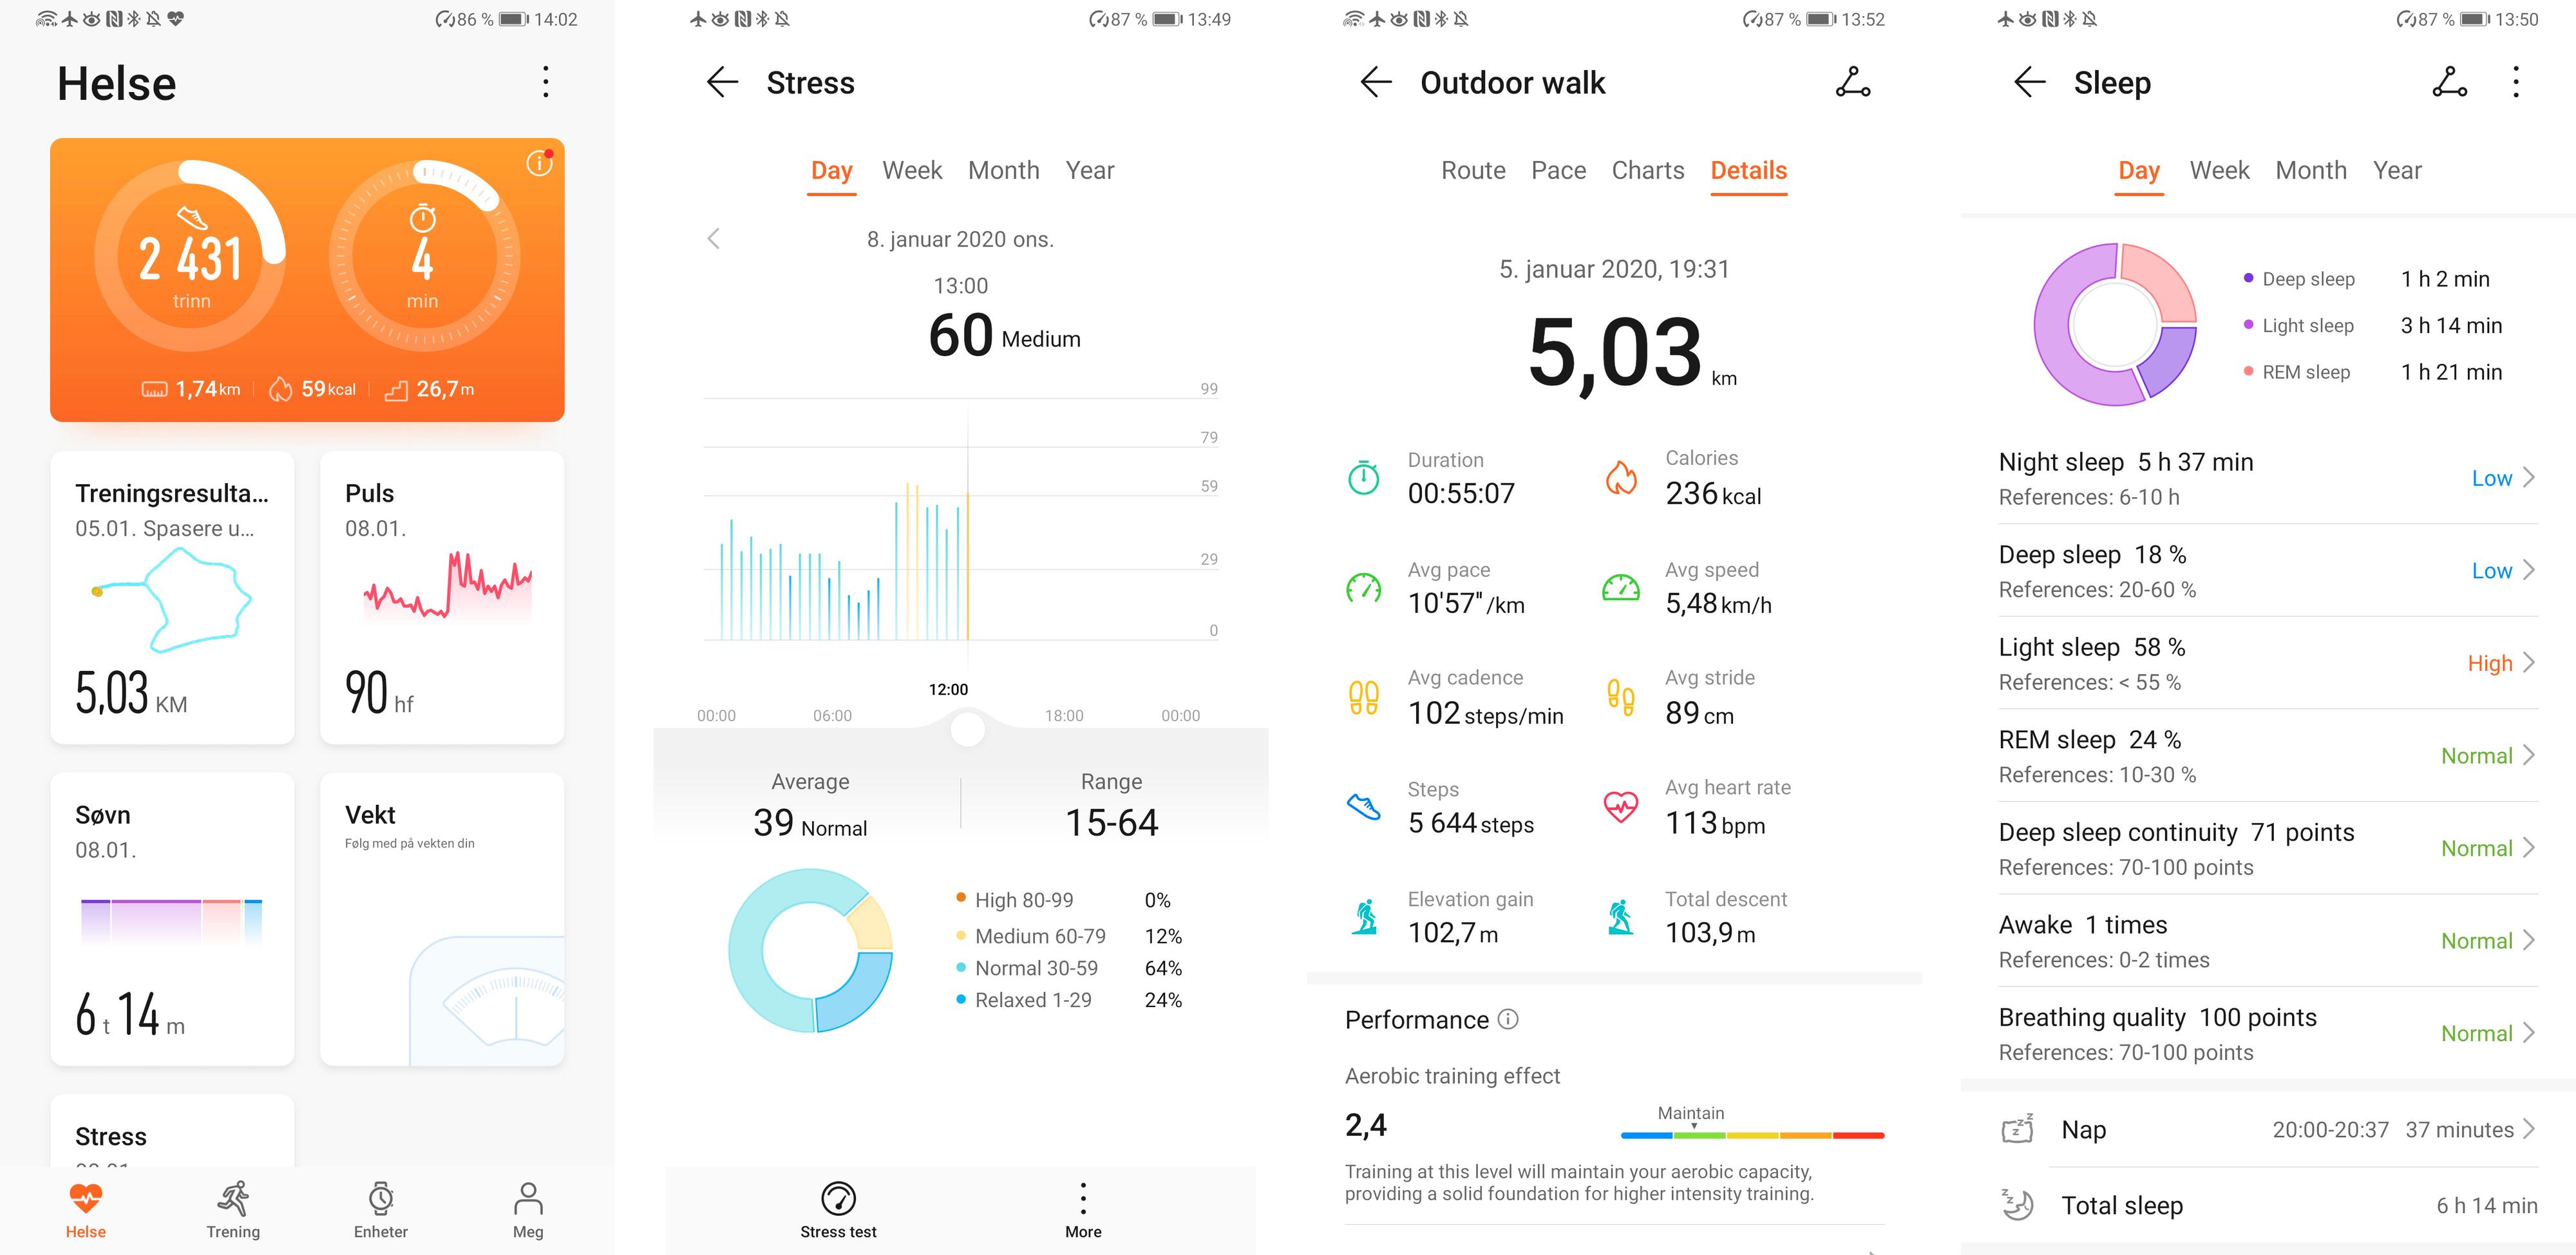 Appen gir et vell av informasjon om helse og aktivitet. Klokka kan måle enkelte faktorer som ikke Samsung eller Apple har i sine verktøykasser, for eksempel stress over tid.